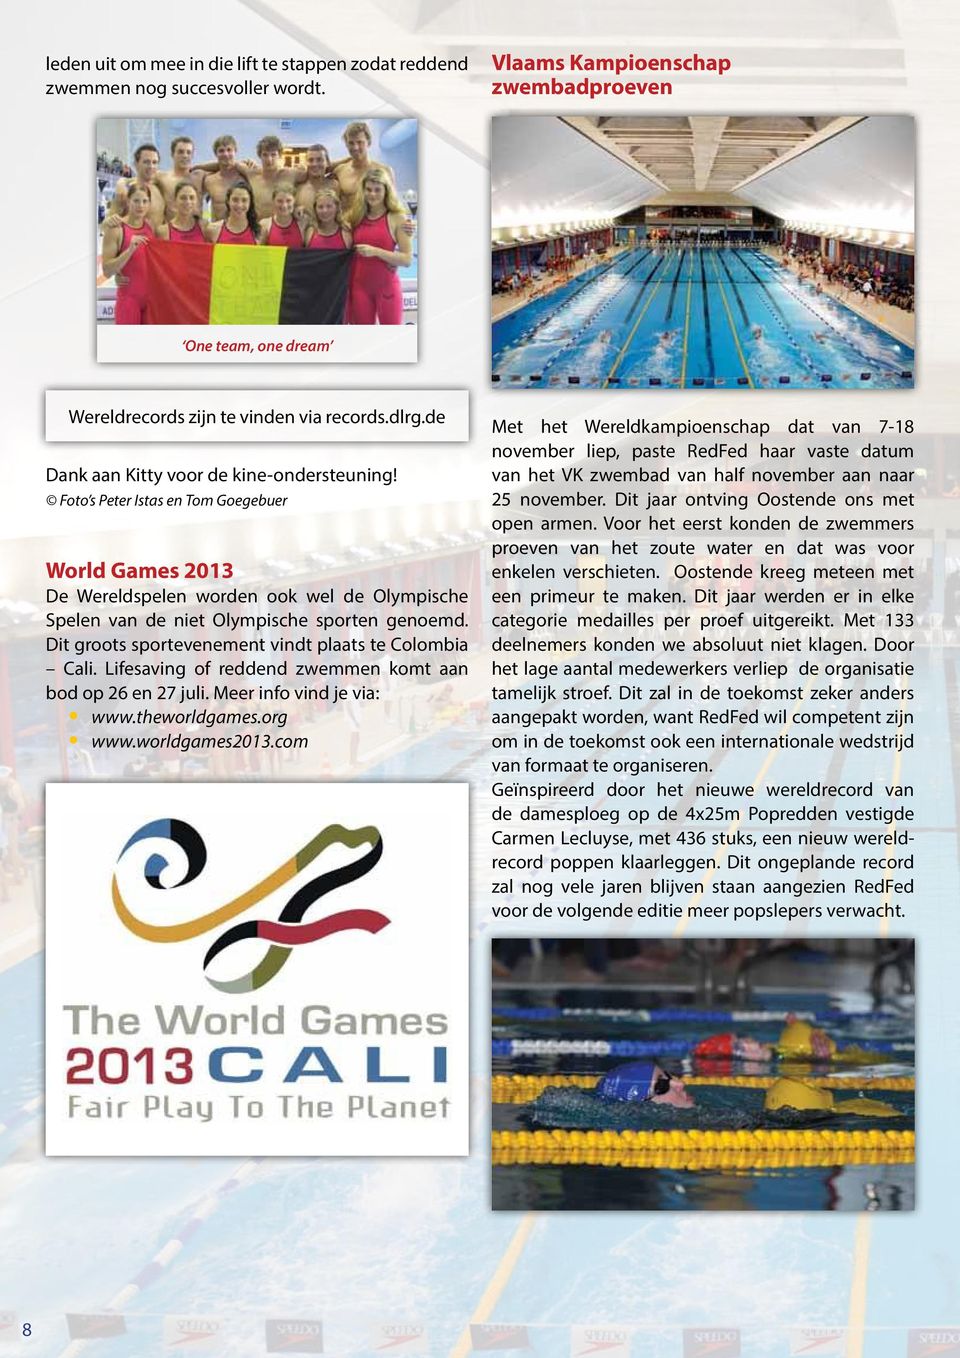 Dit groots sportevenement vindt plaats te Colombia Cali. Lifesaving of reddend zwemmen komt aan bod op 26 en 27 juli. Meer info vind je via: www.theworldgames.org www.worldgames2013.